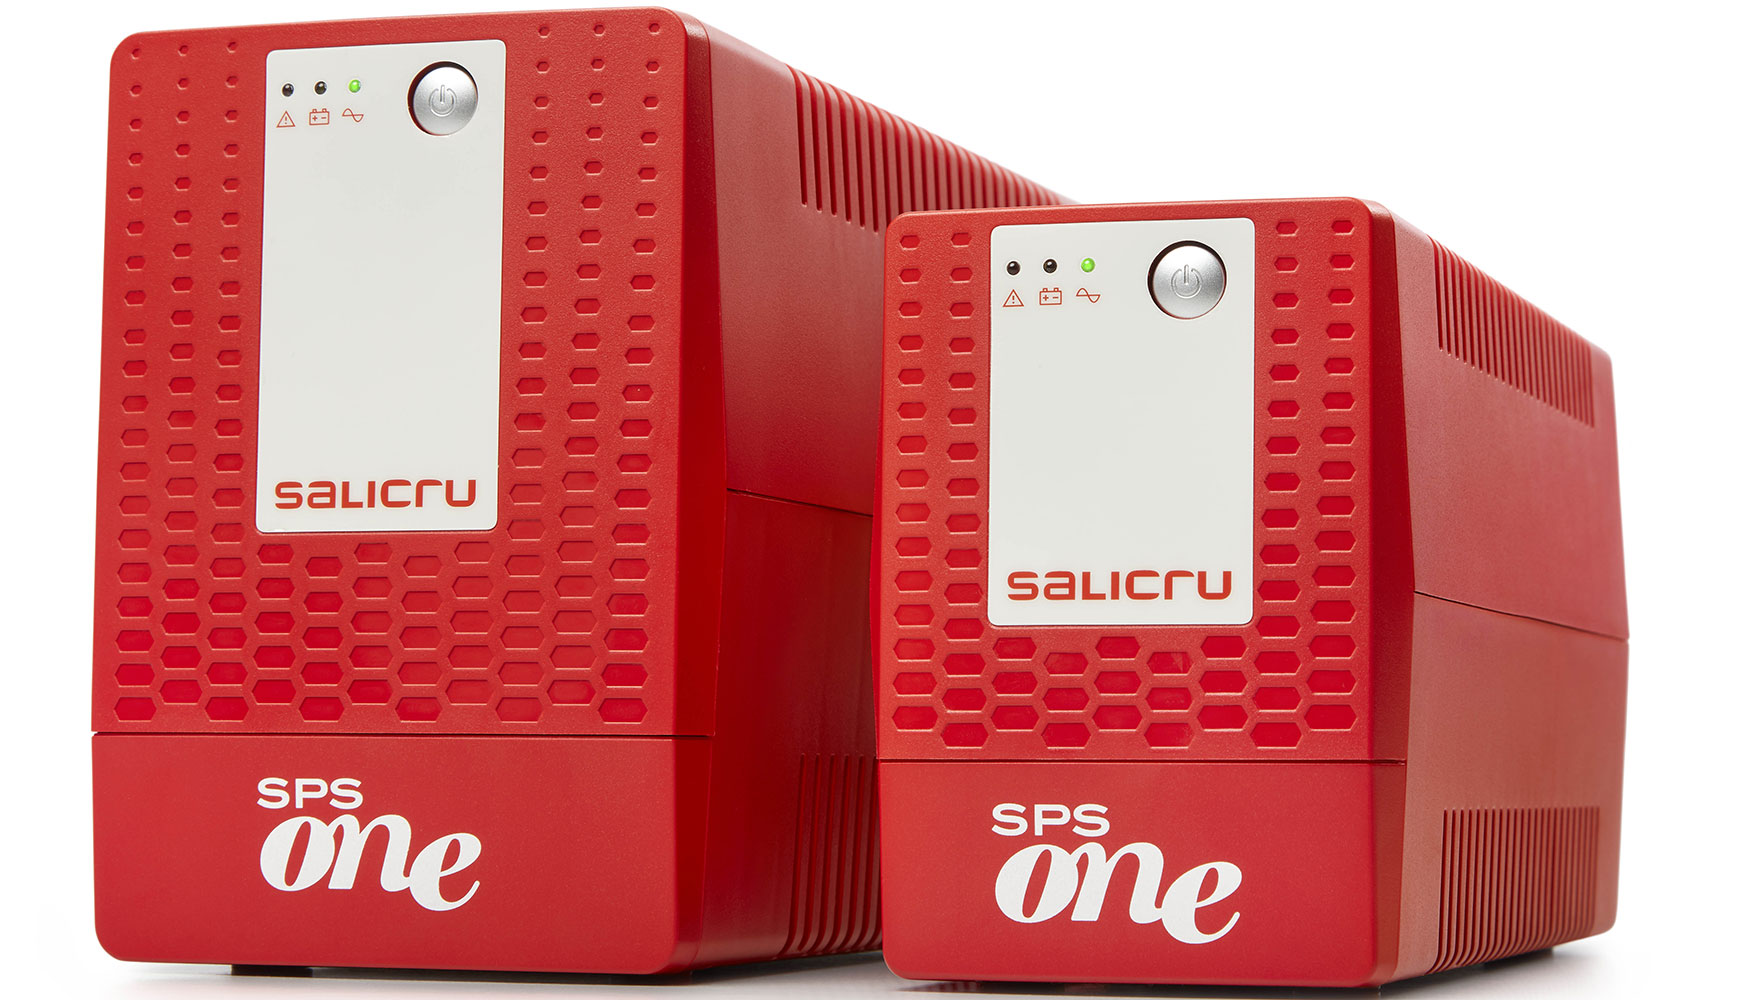 La serie SPS ONE de Salicru dispone de un rango de potencias de 500, 700, 900, 1100, 1500 y 2000 VA